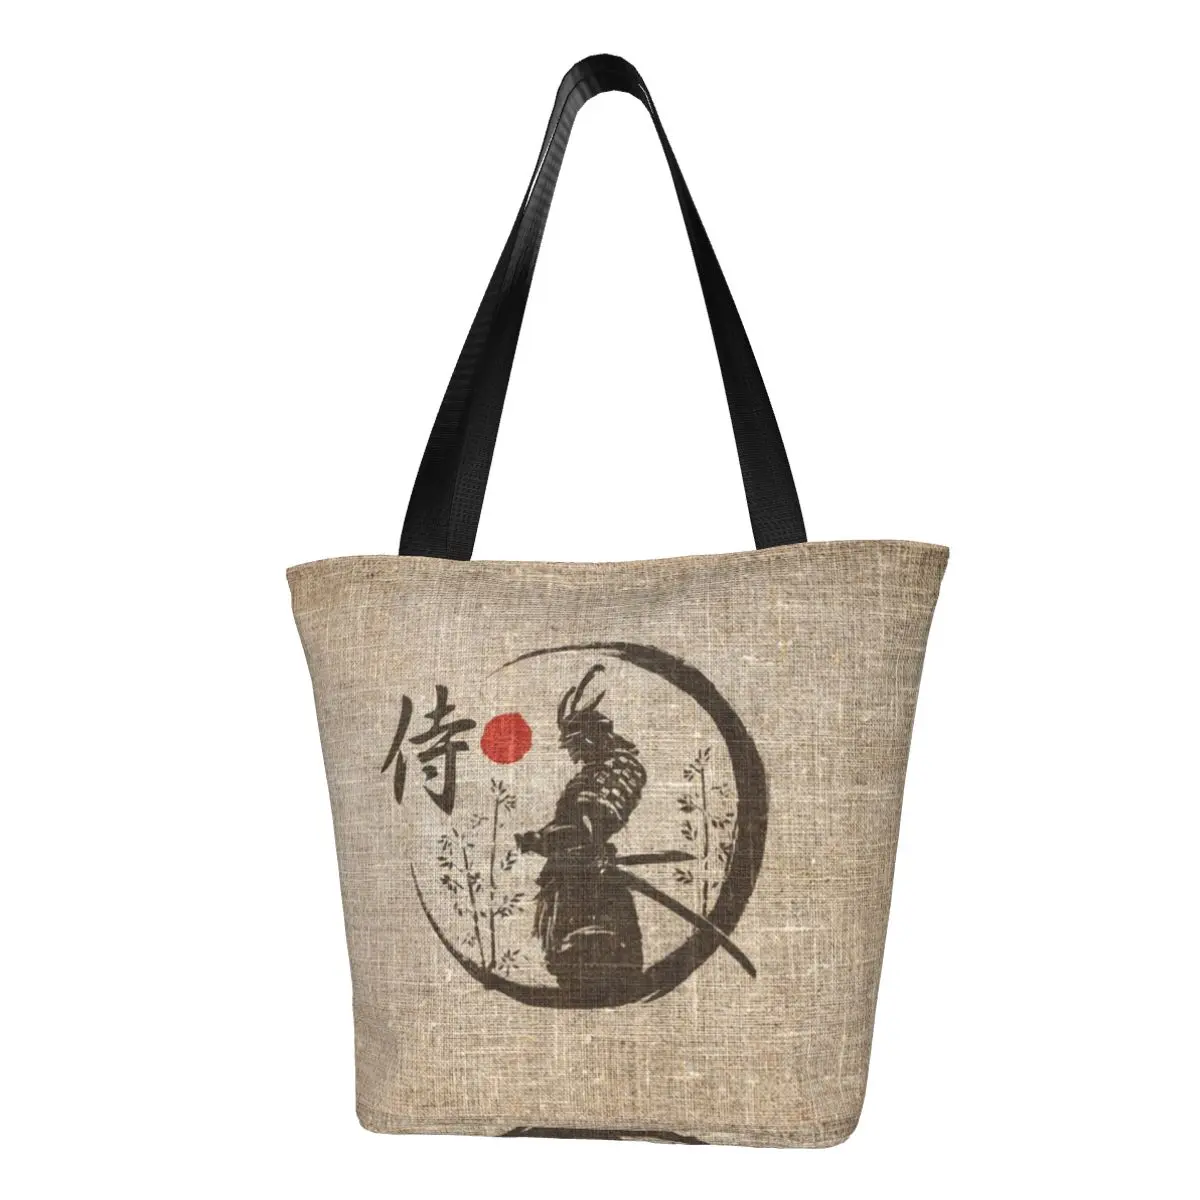 Сумки для покупок с японским словом Samurai, забавные холщовые сумки для покупок через плечо, портативная сумка большой емкости